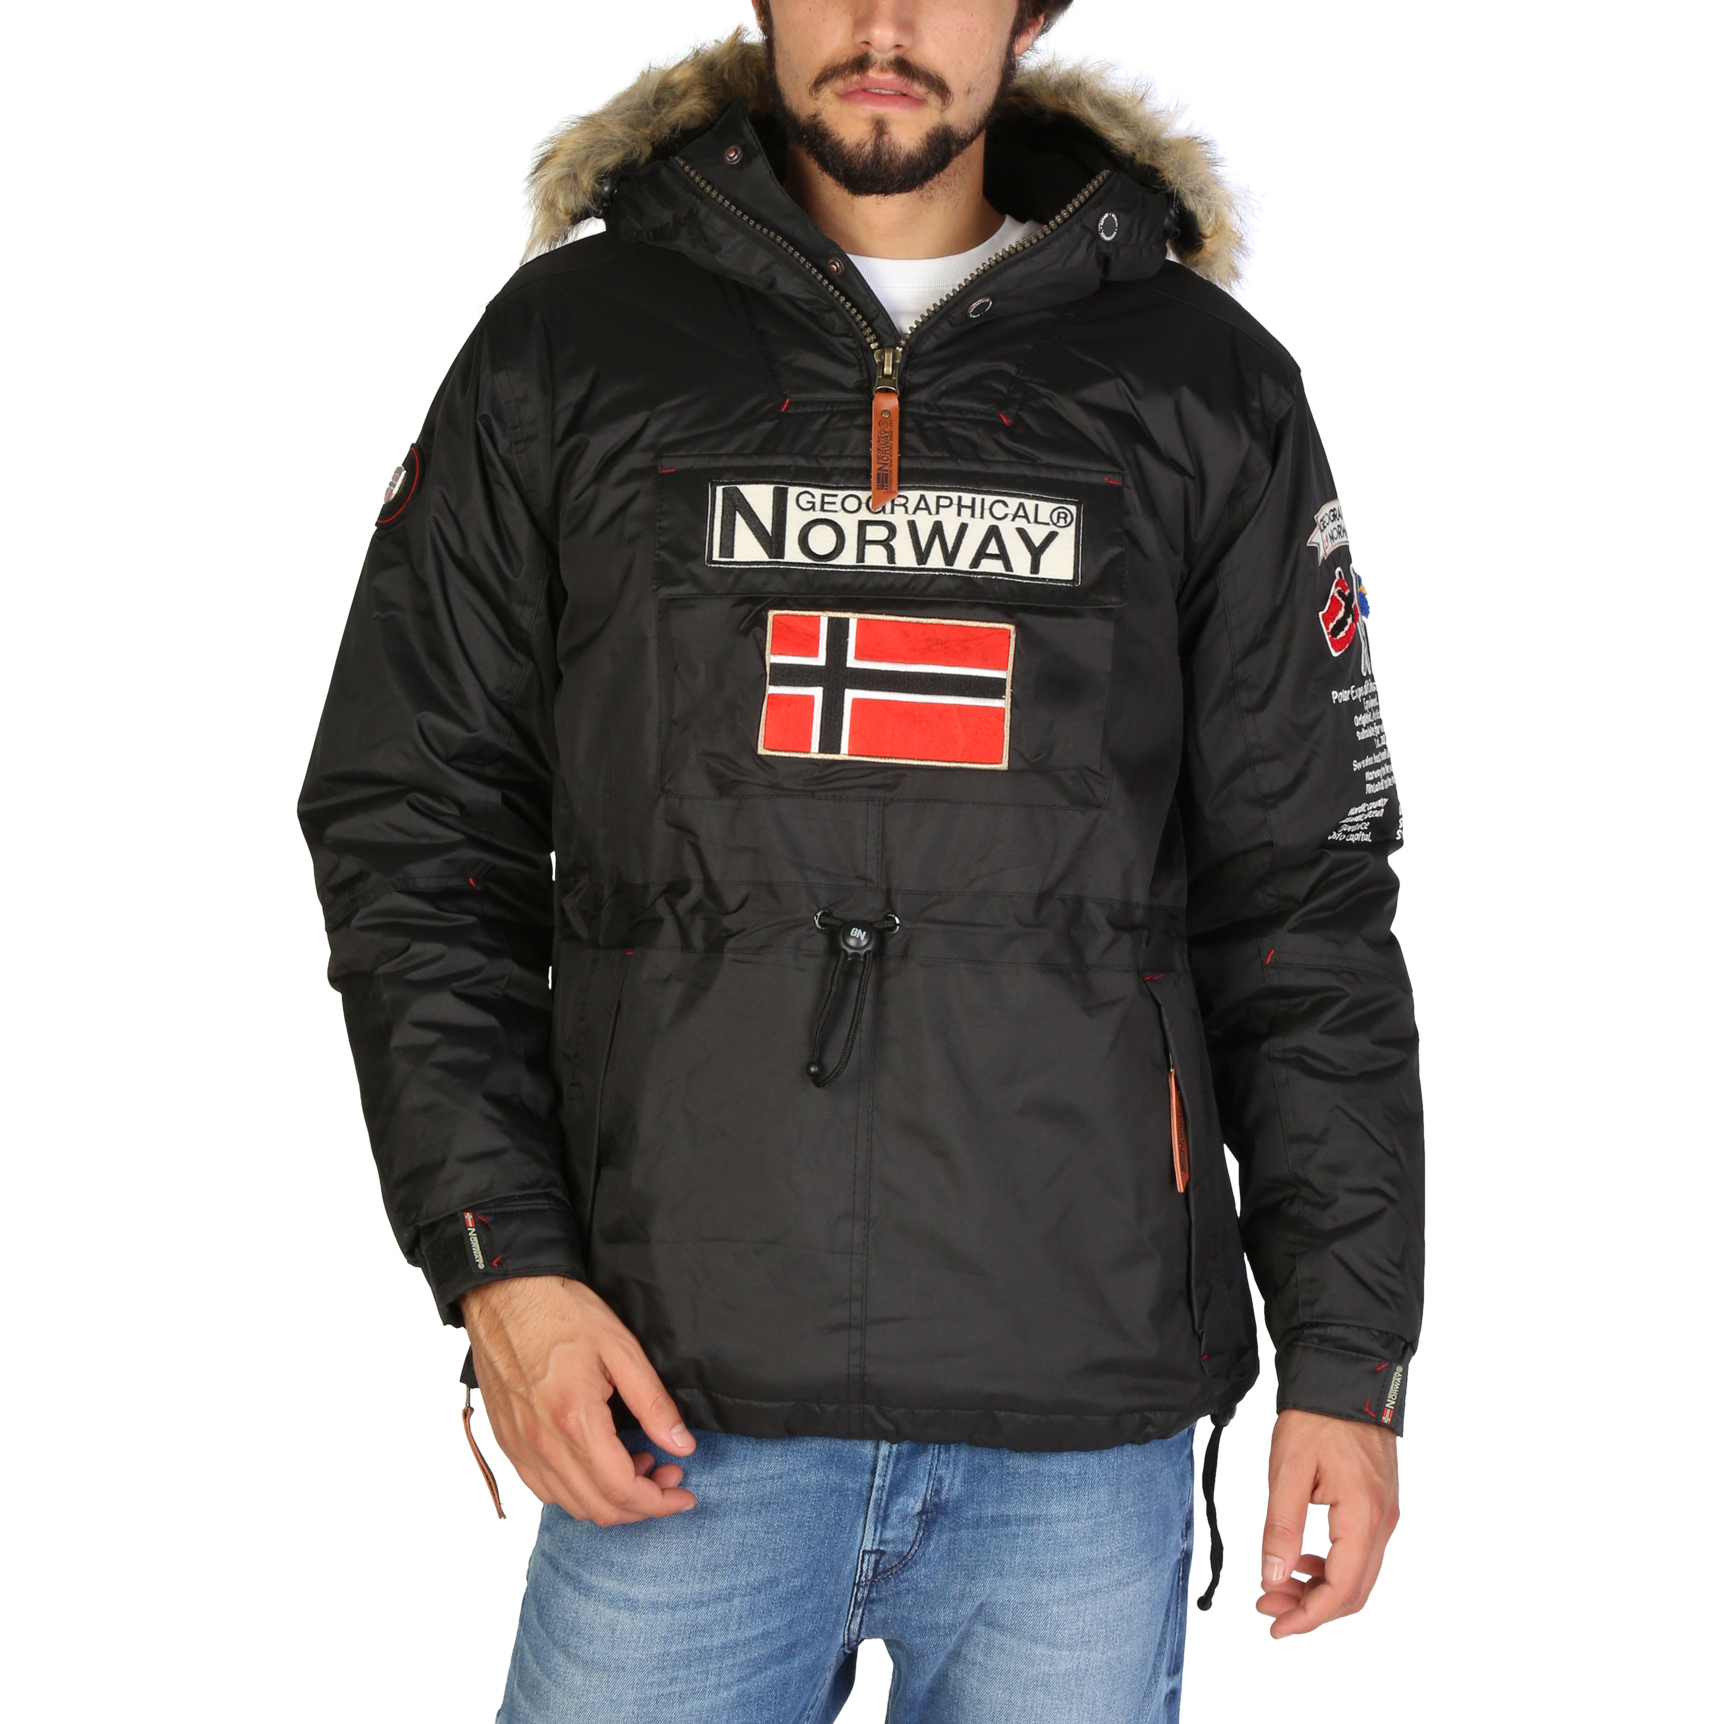 Dónde comprar chaqueta Norway - Geographical Norway España ®